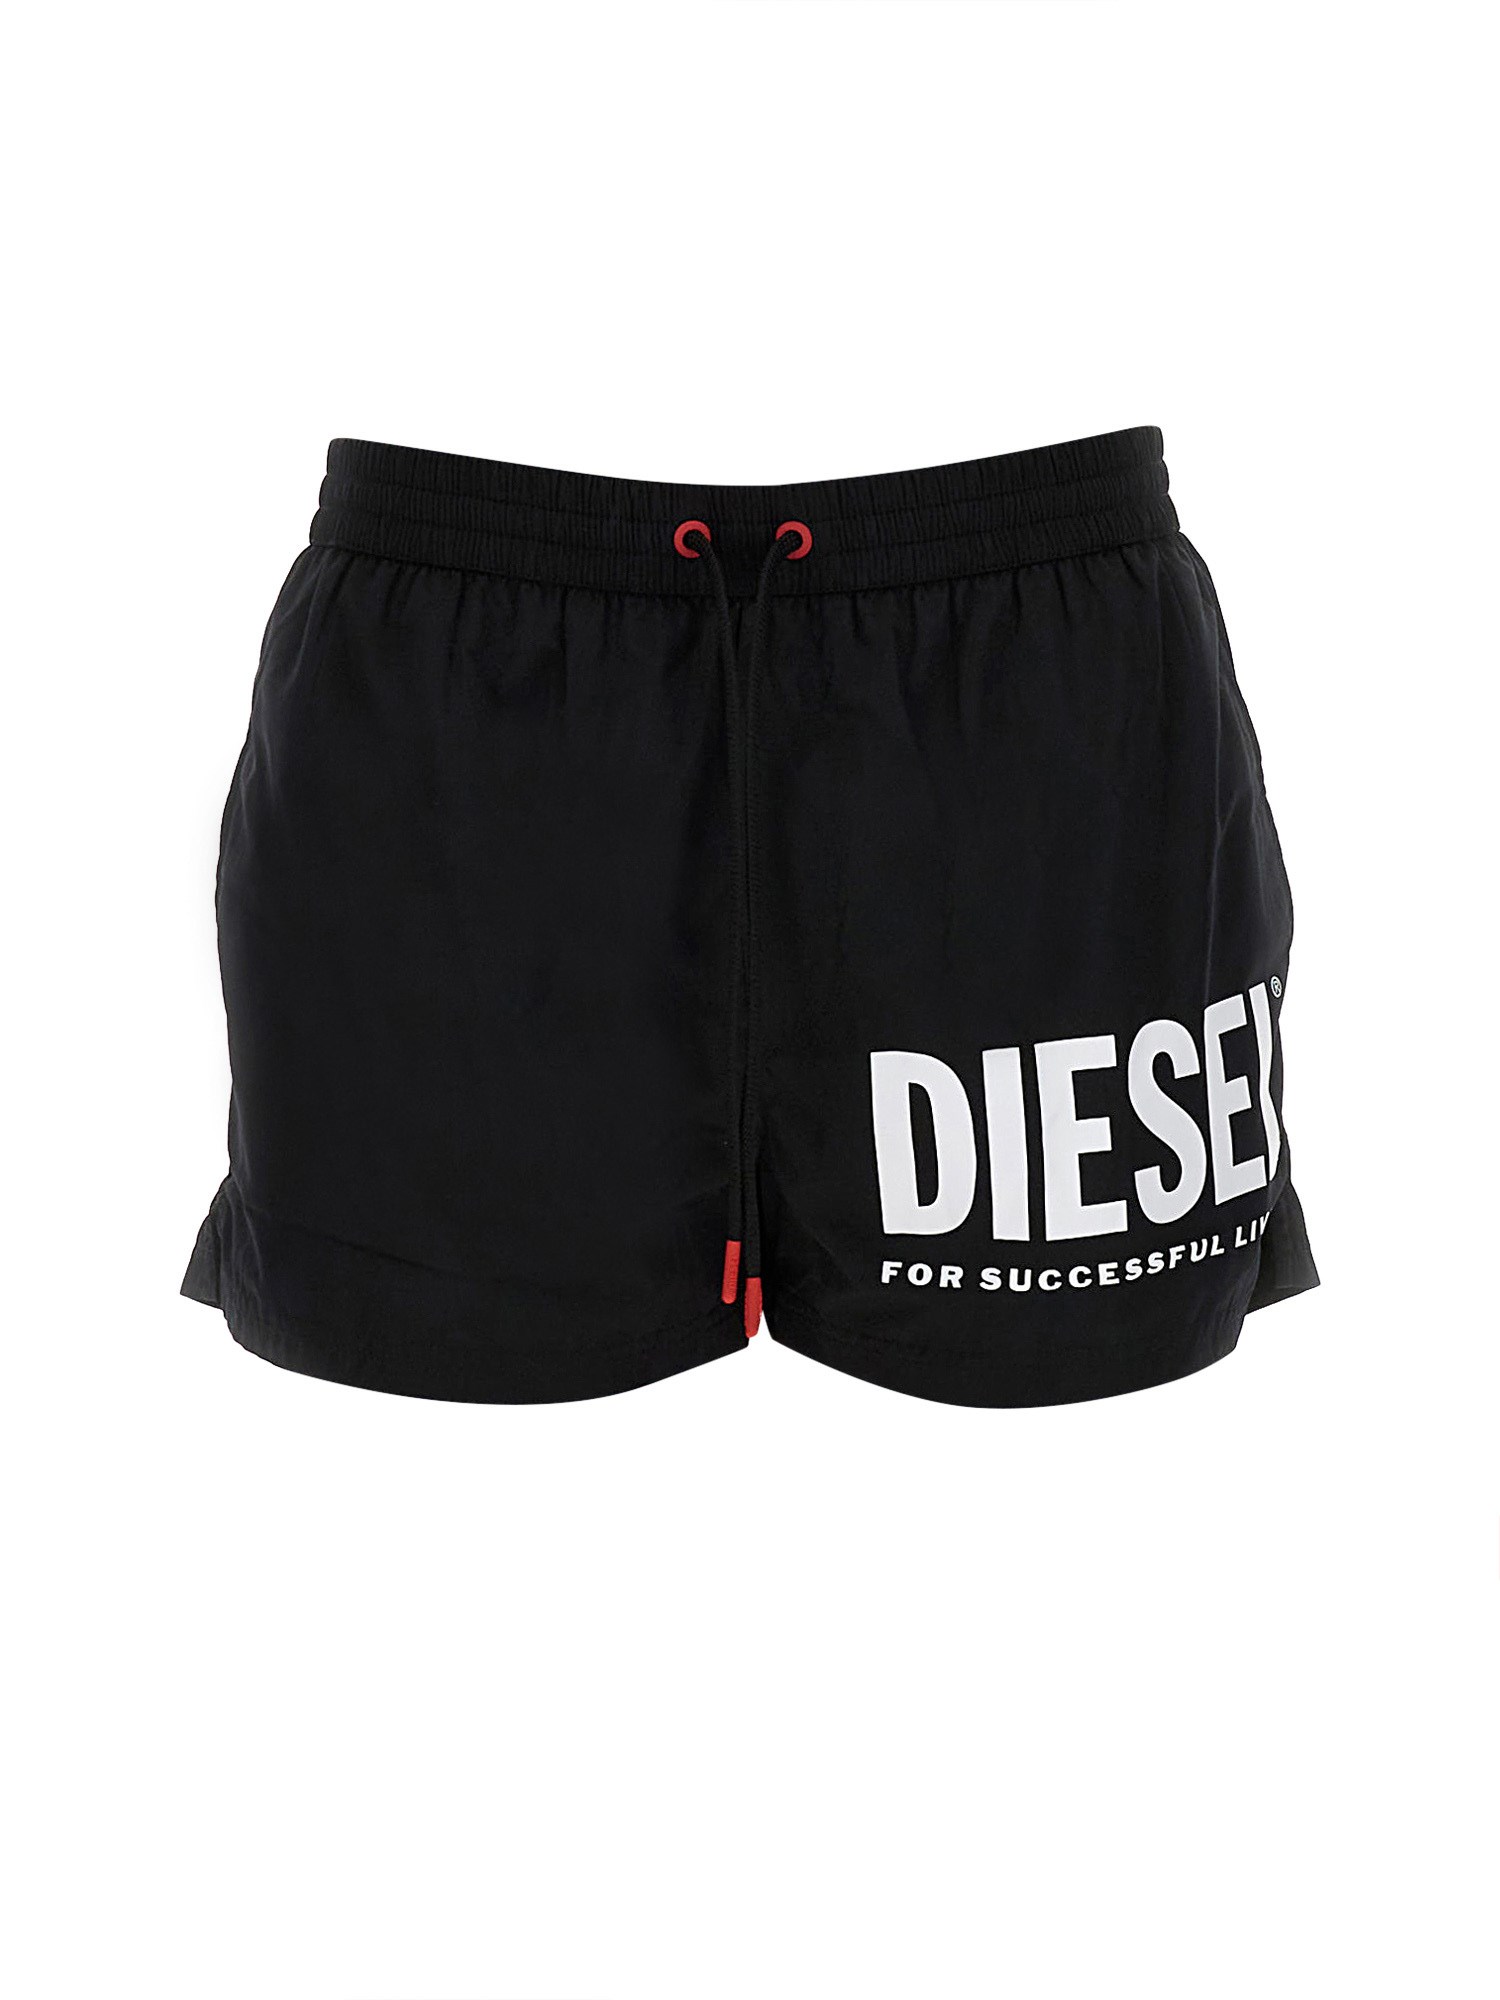 Diesel diesel boxer costume with logo